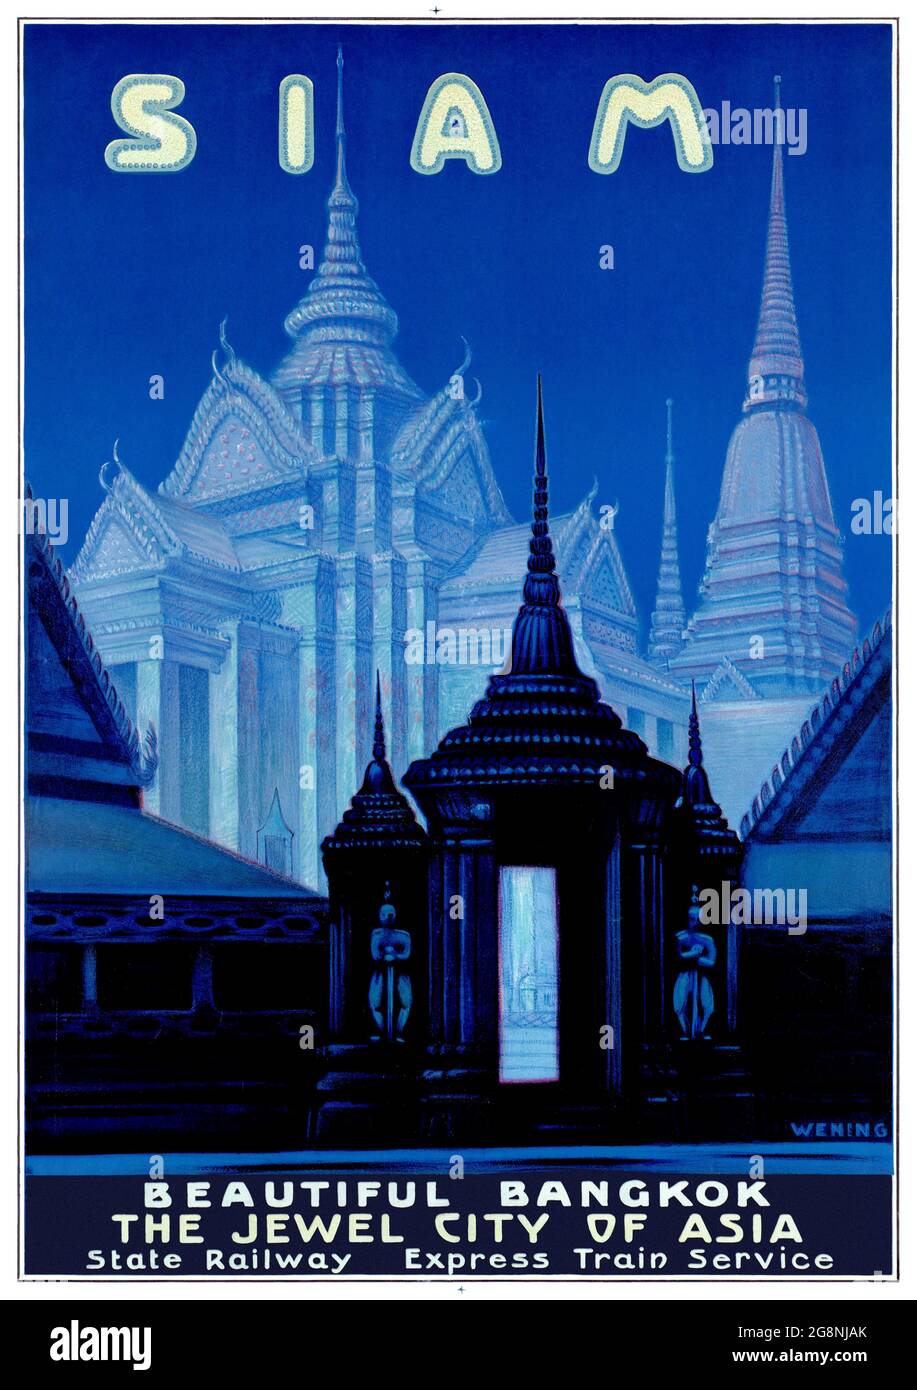 Siam - magnifique Bangkok, la Cité des joyaux de l'Asie par Michael Rudolf Wening (1893-1970). Affiche ancienne restaurée publiée dans les années 1920 en Thaïlande. Banque D'Images